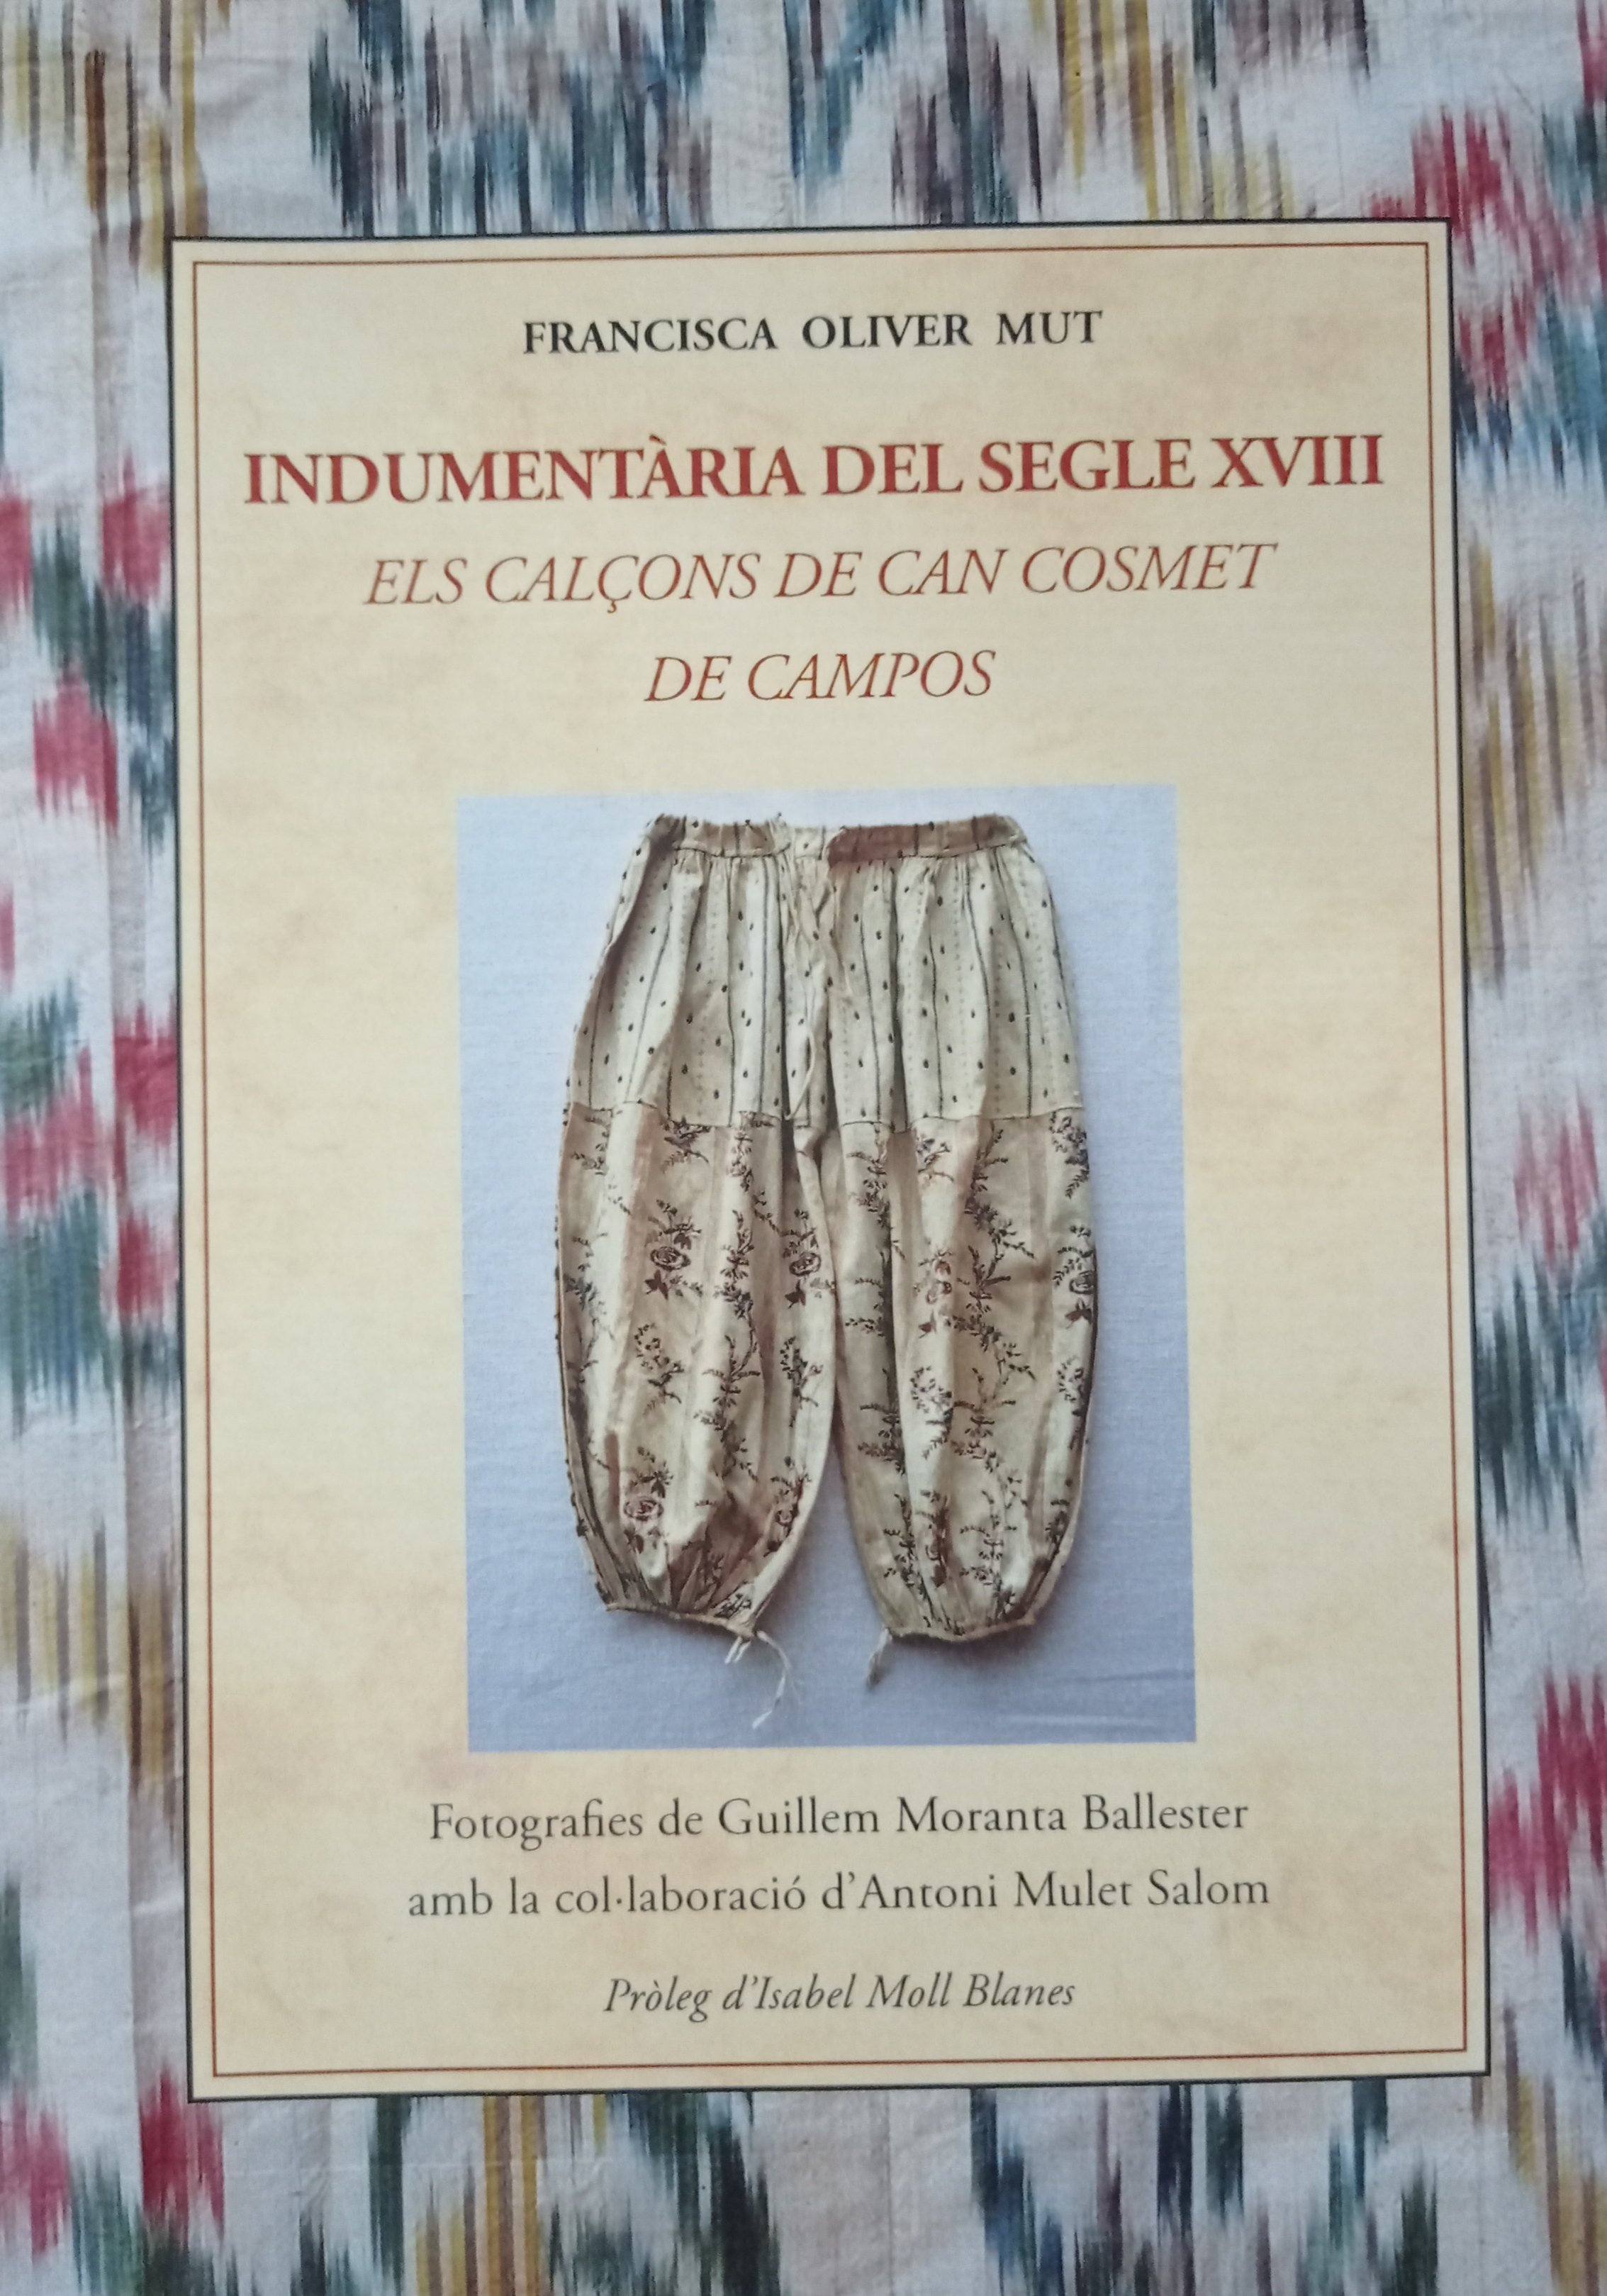 INDUMENTÀRIA DEL SEGLE XVIII. Els calçons de Can Cosmet de Campos